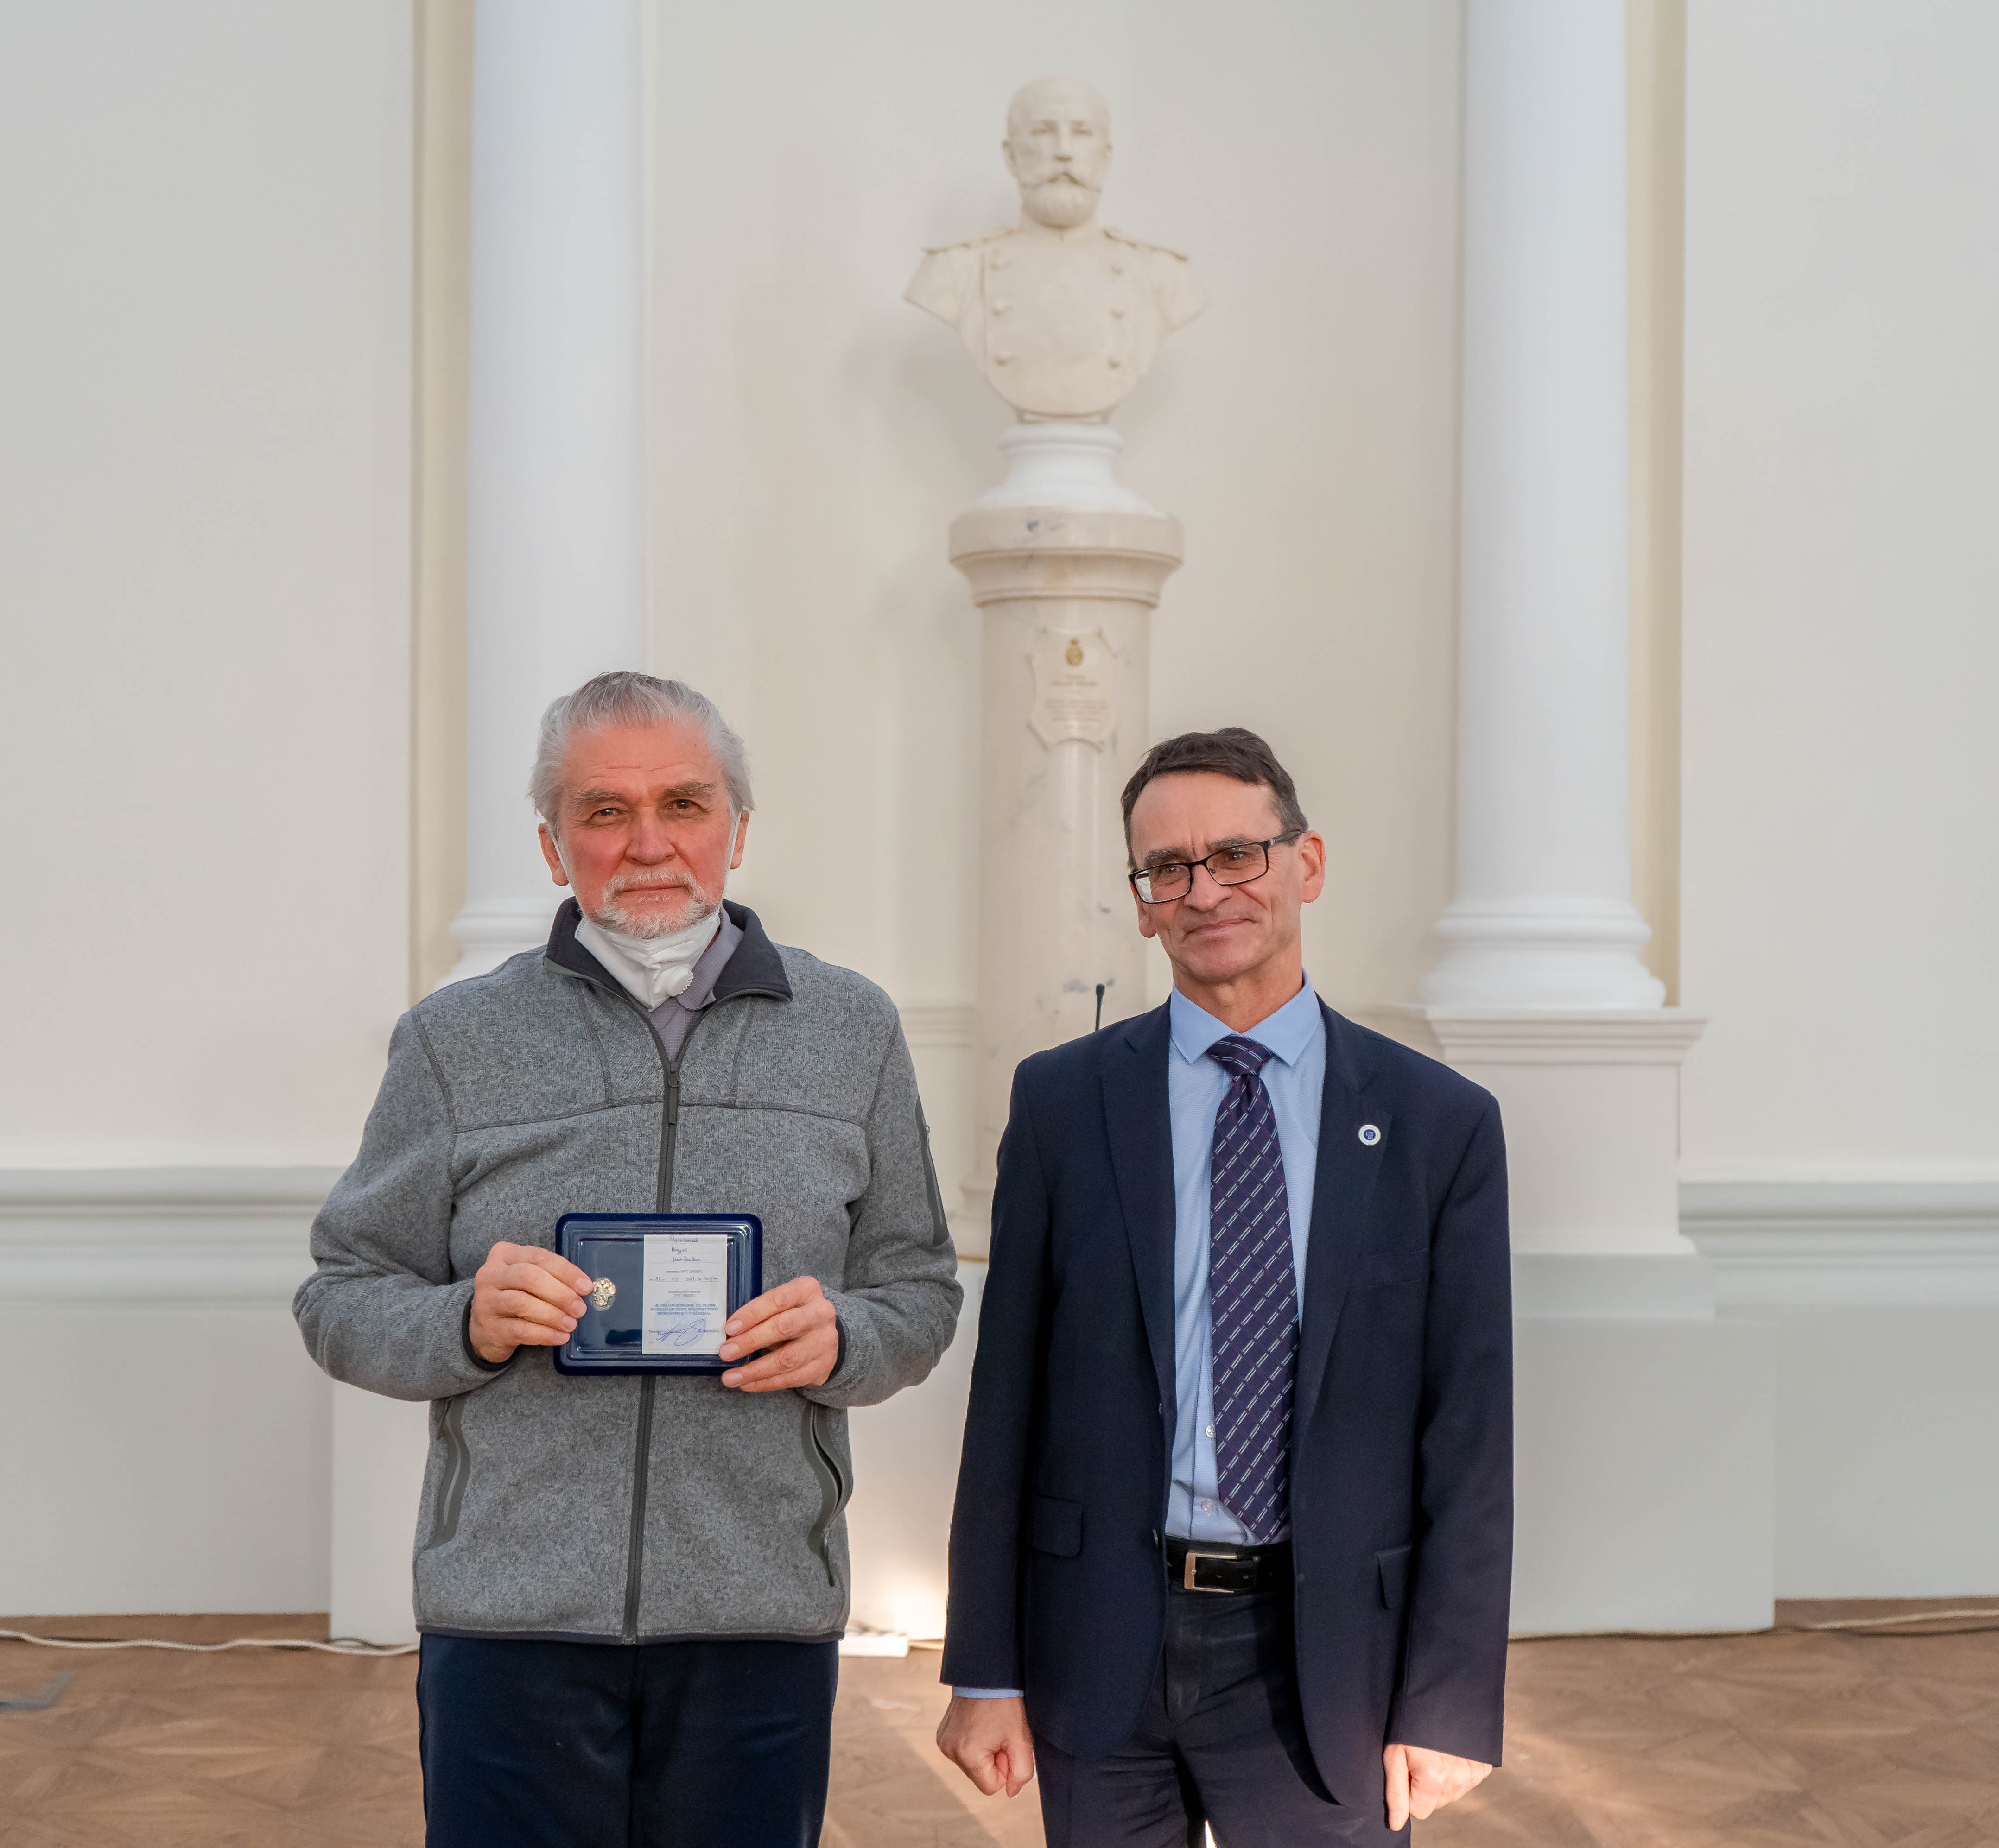 Награждение в честь 125-летия университета Филимонова Андрей Матвеевич